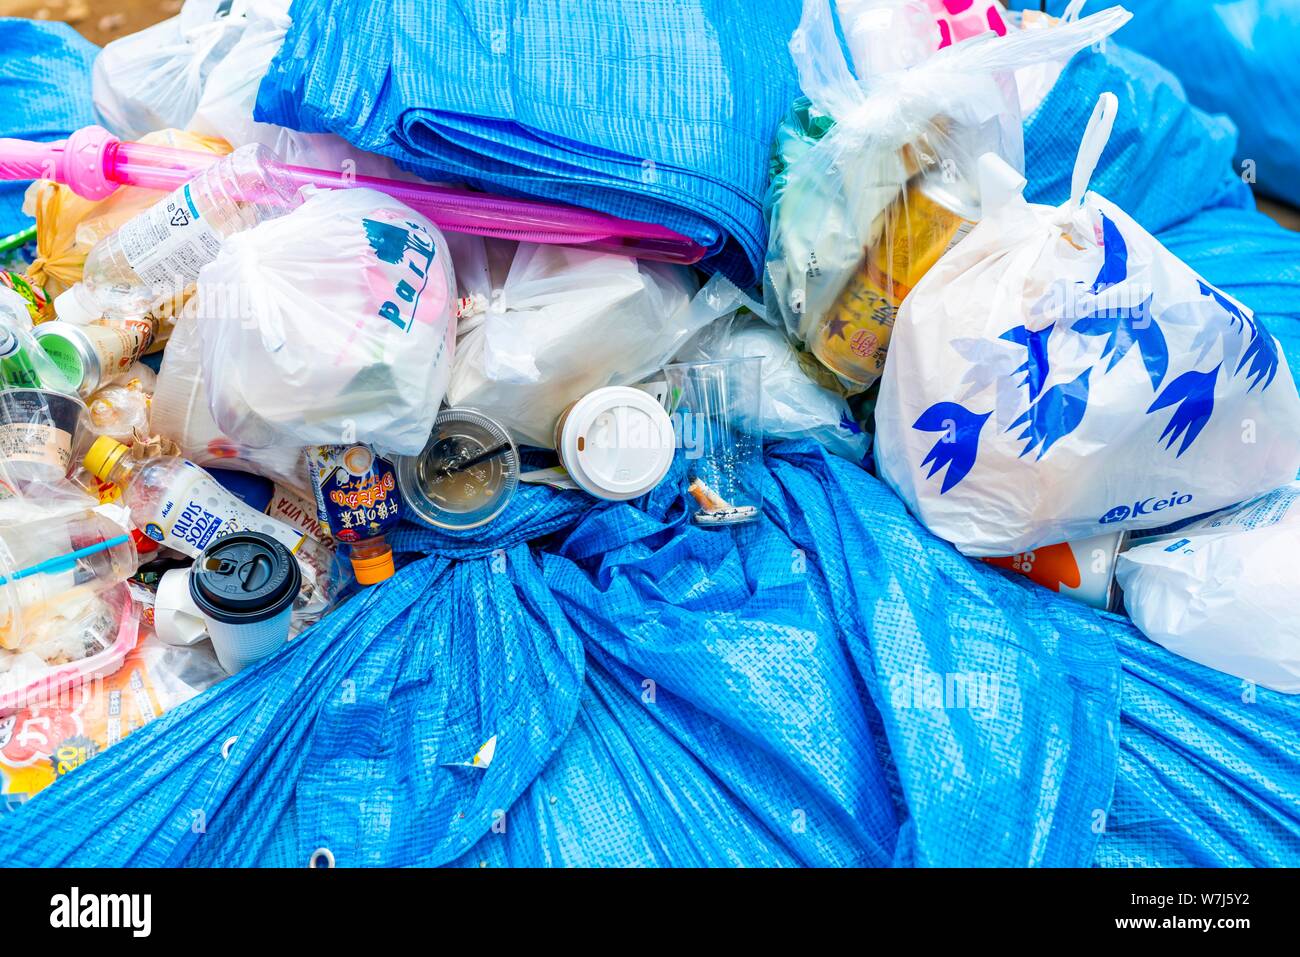 La montagne d'ordures, déchets plastiques, verres en plastique, bouteilles, déchets résiduels, Tokyo, Japon Banque D'Images